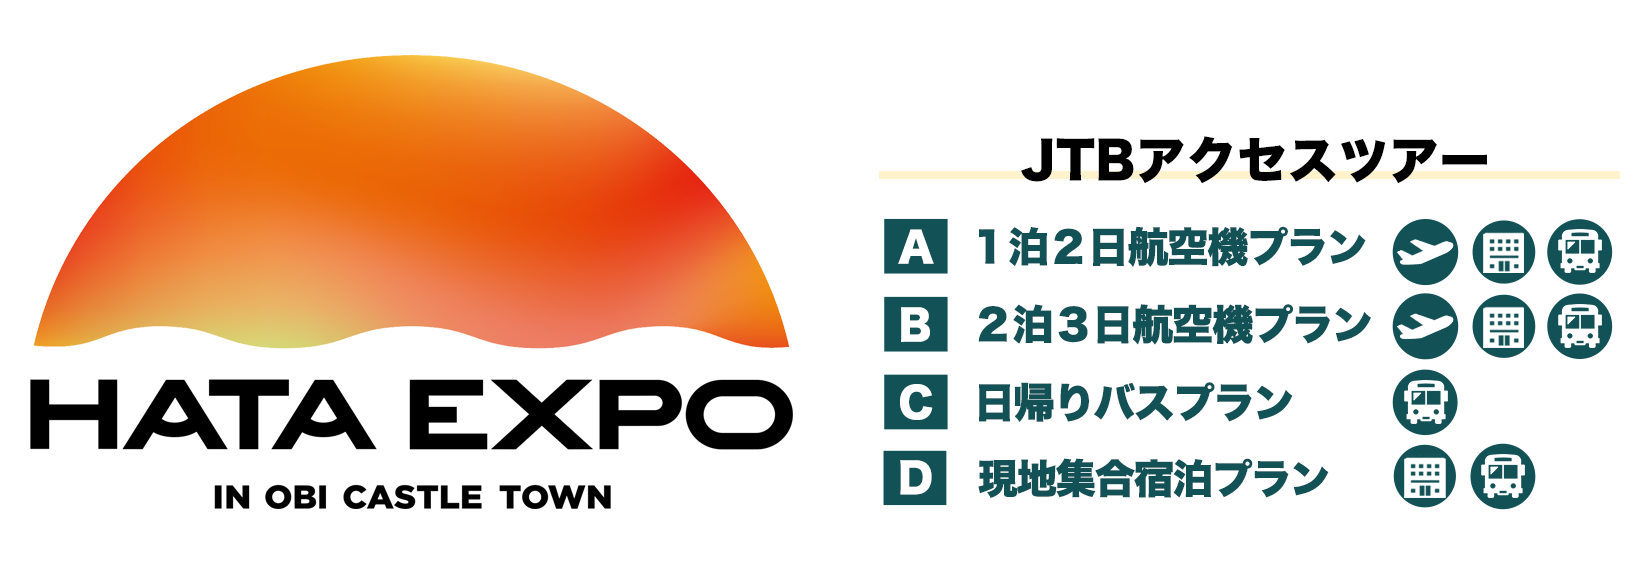 日南市合併10周年記念 “HATA EXPO” in 飫肥城下町JTBアクセスツアー